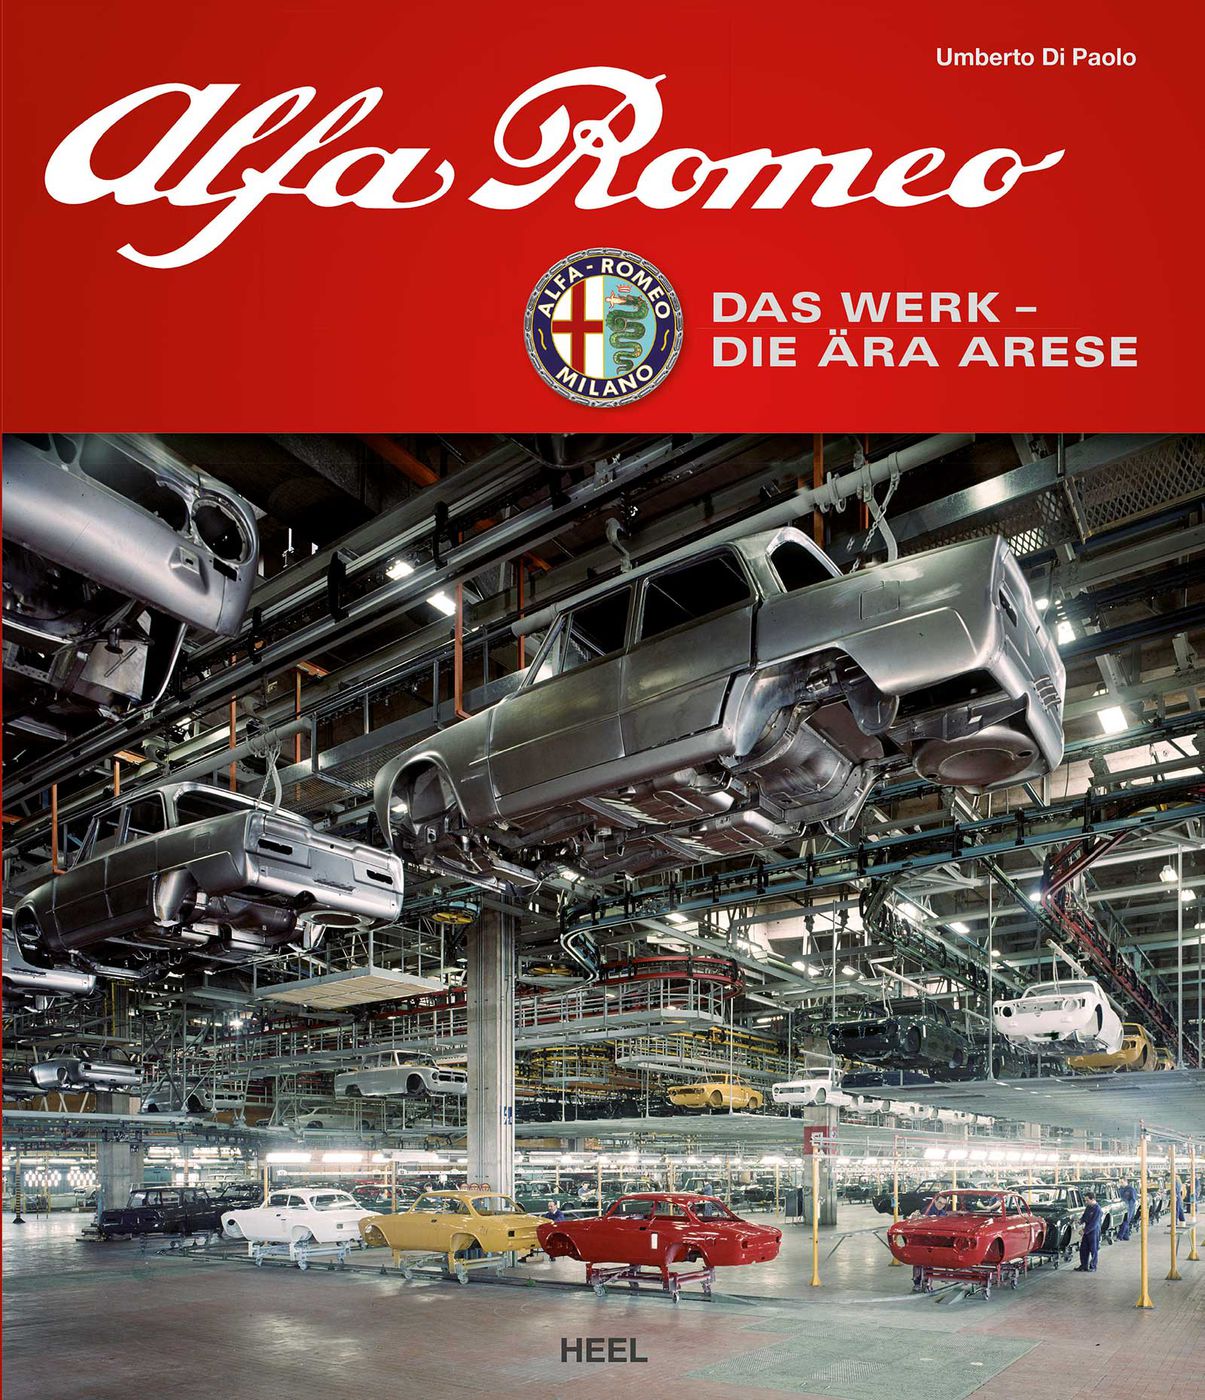 Alfa Romeo - Das Werk
Alfa Romeo - Das Werk
Alfa Romeo - Das Wer